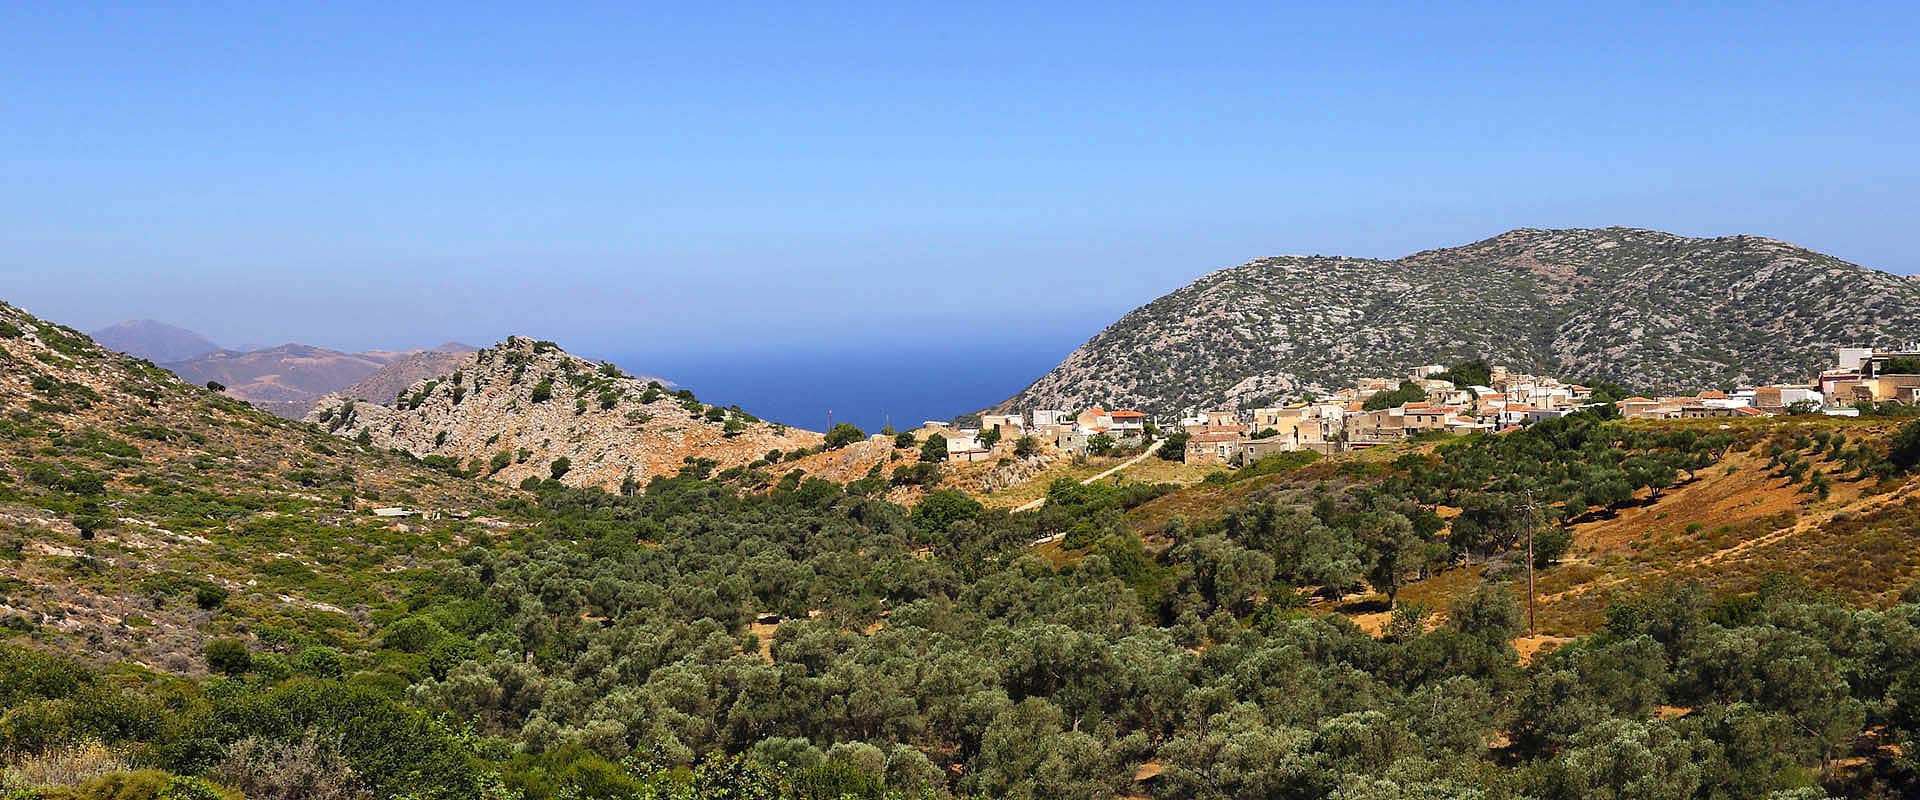 Ekoturism hotellvillor på Kreta Grekland